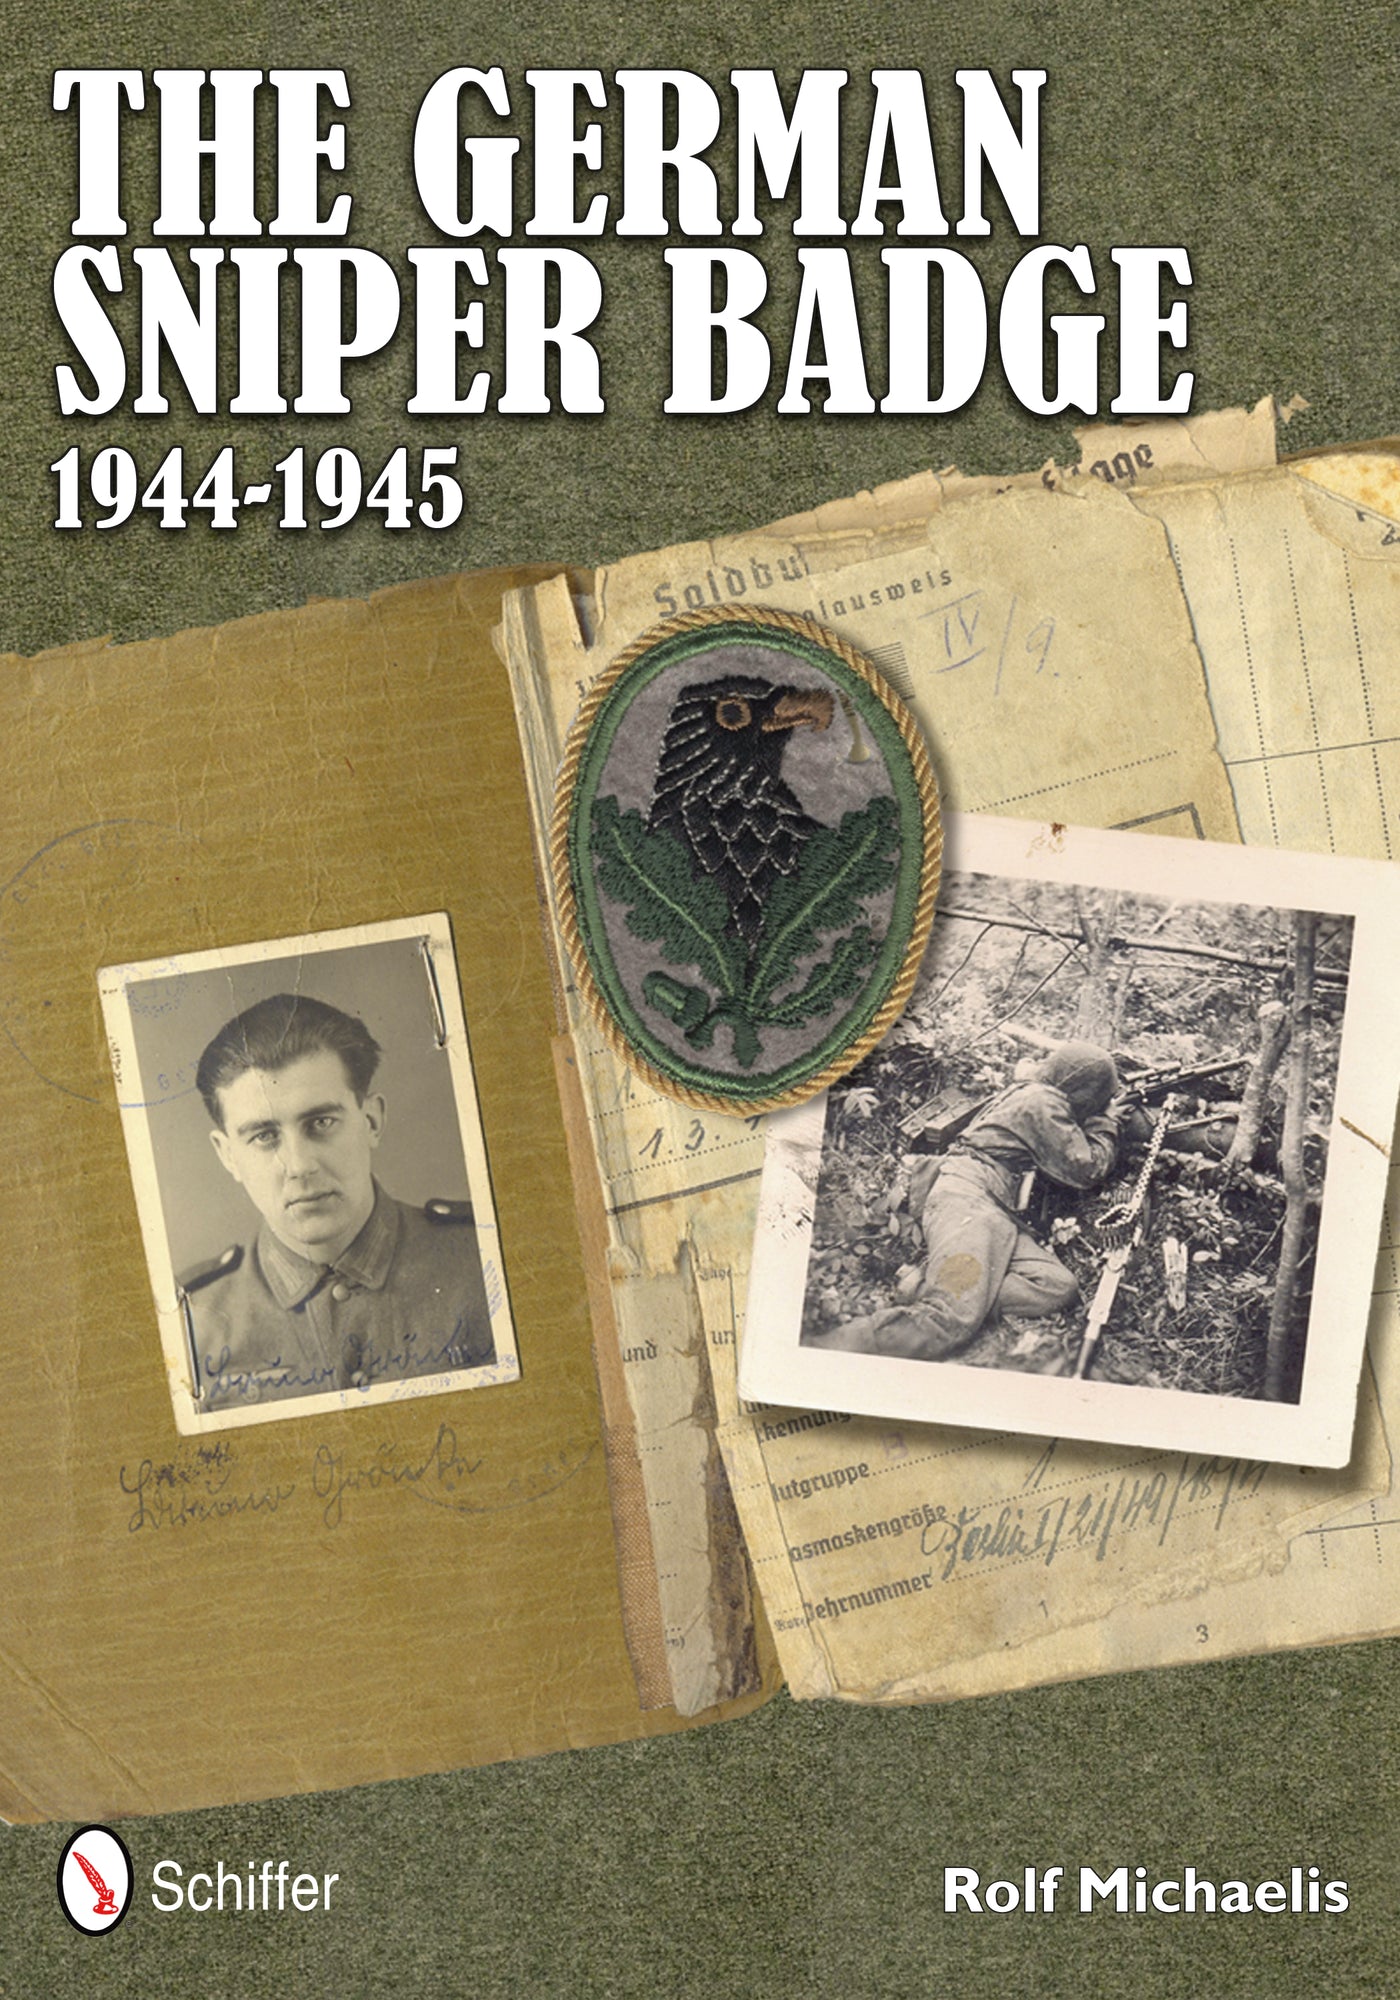 The German Sniper Badge 1944-1945